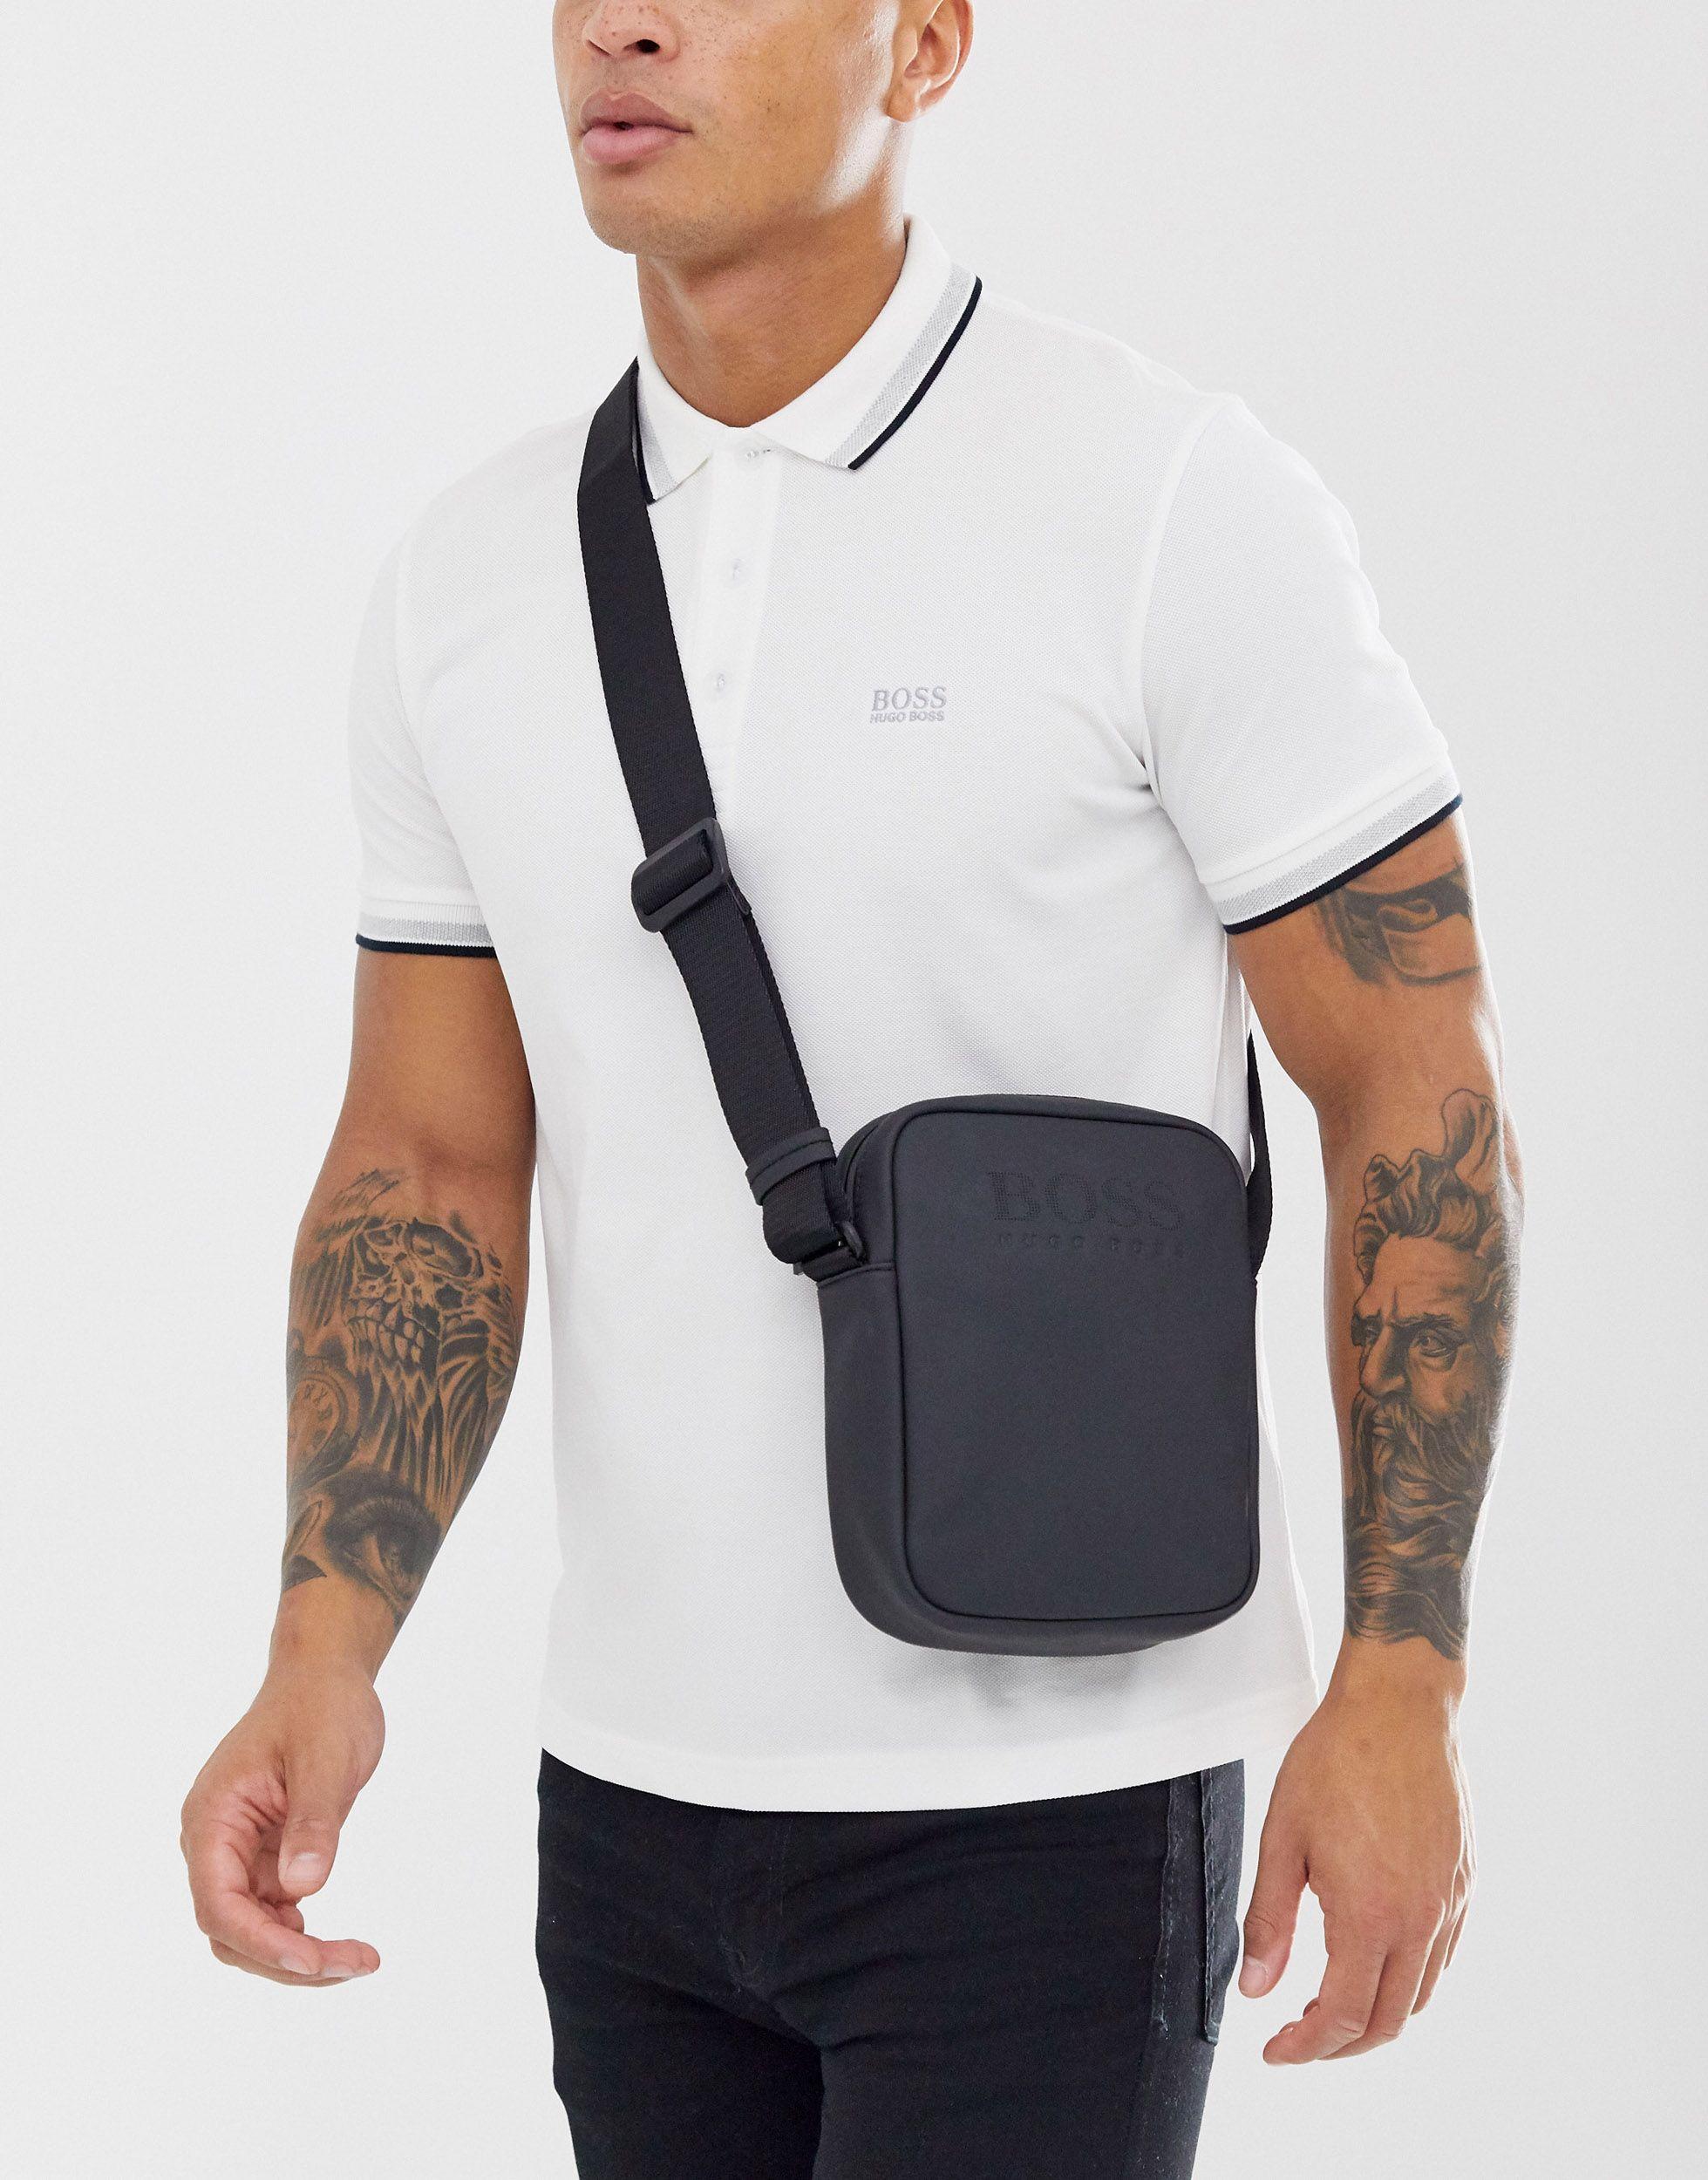 BOSS by HUGO BOSS Leather Hyper Rubberised Crossbody Bag in Black for Men |  Lyst Australia